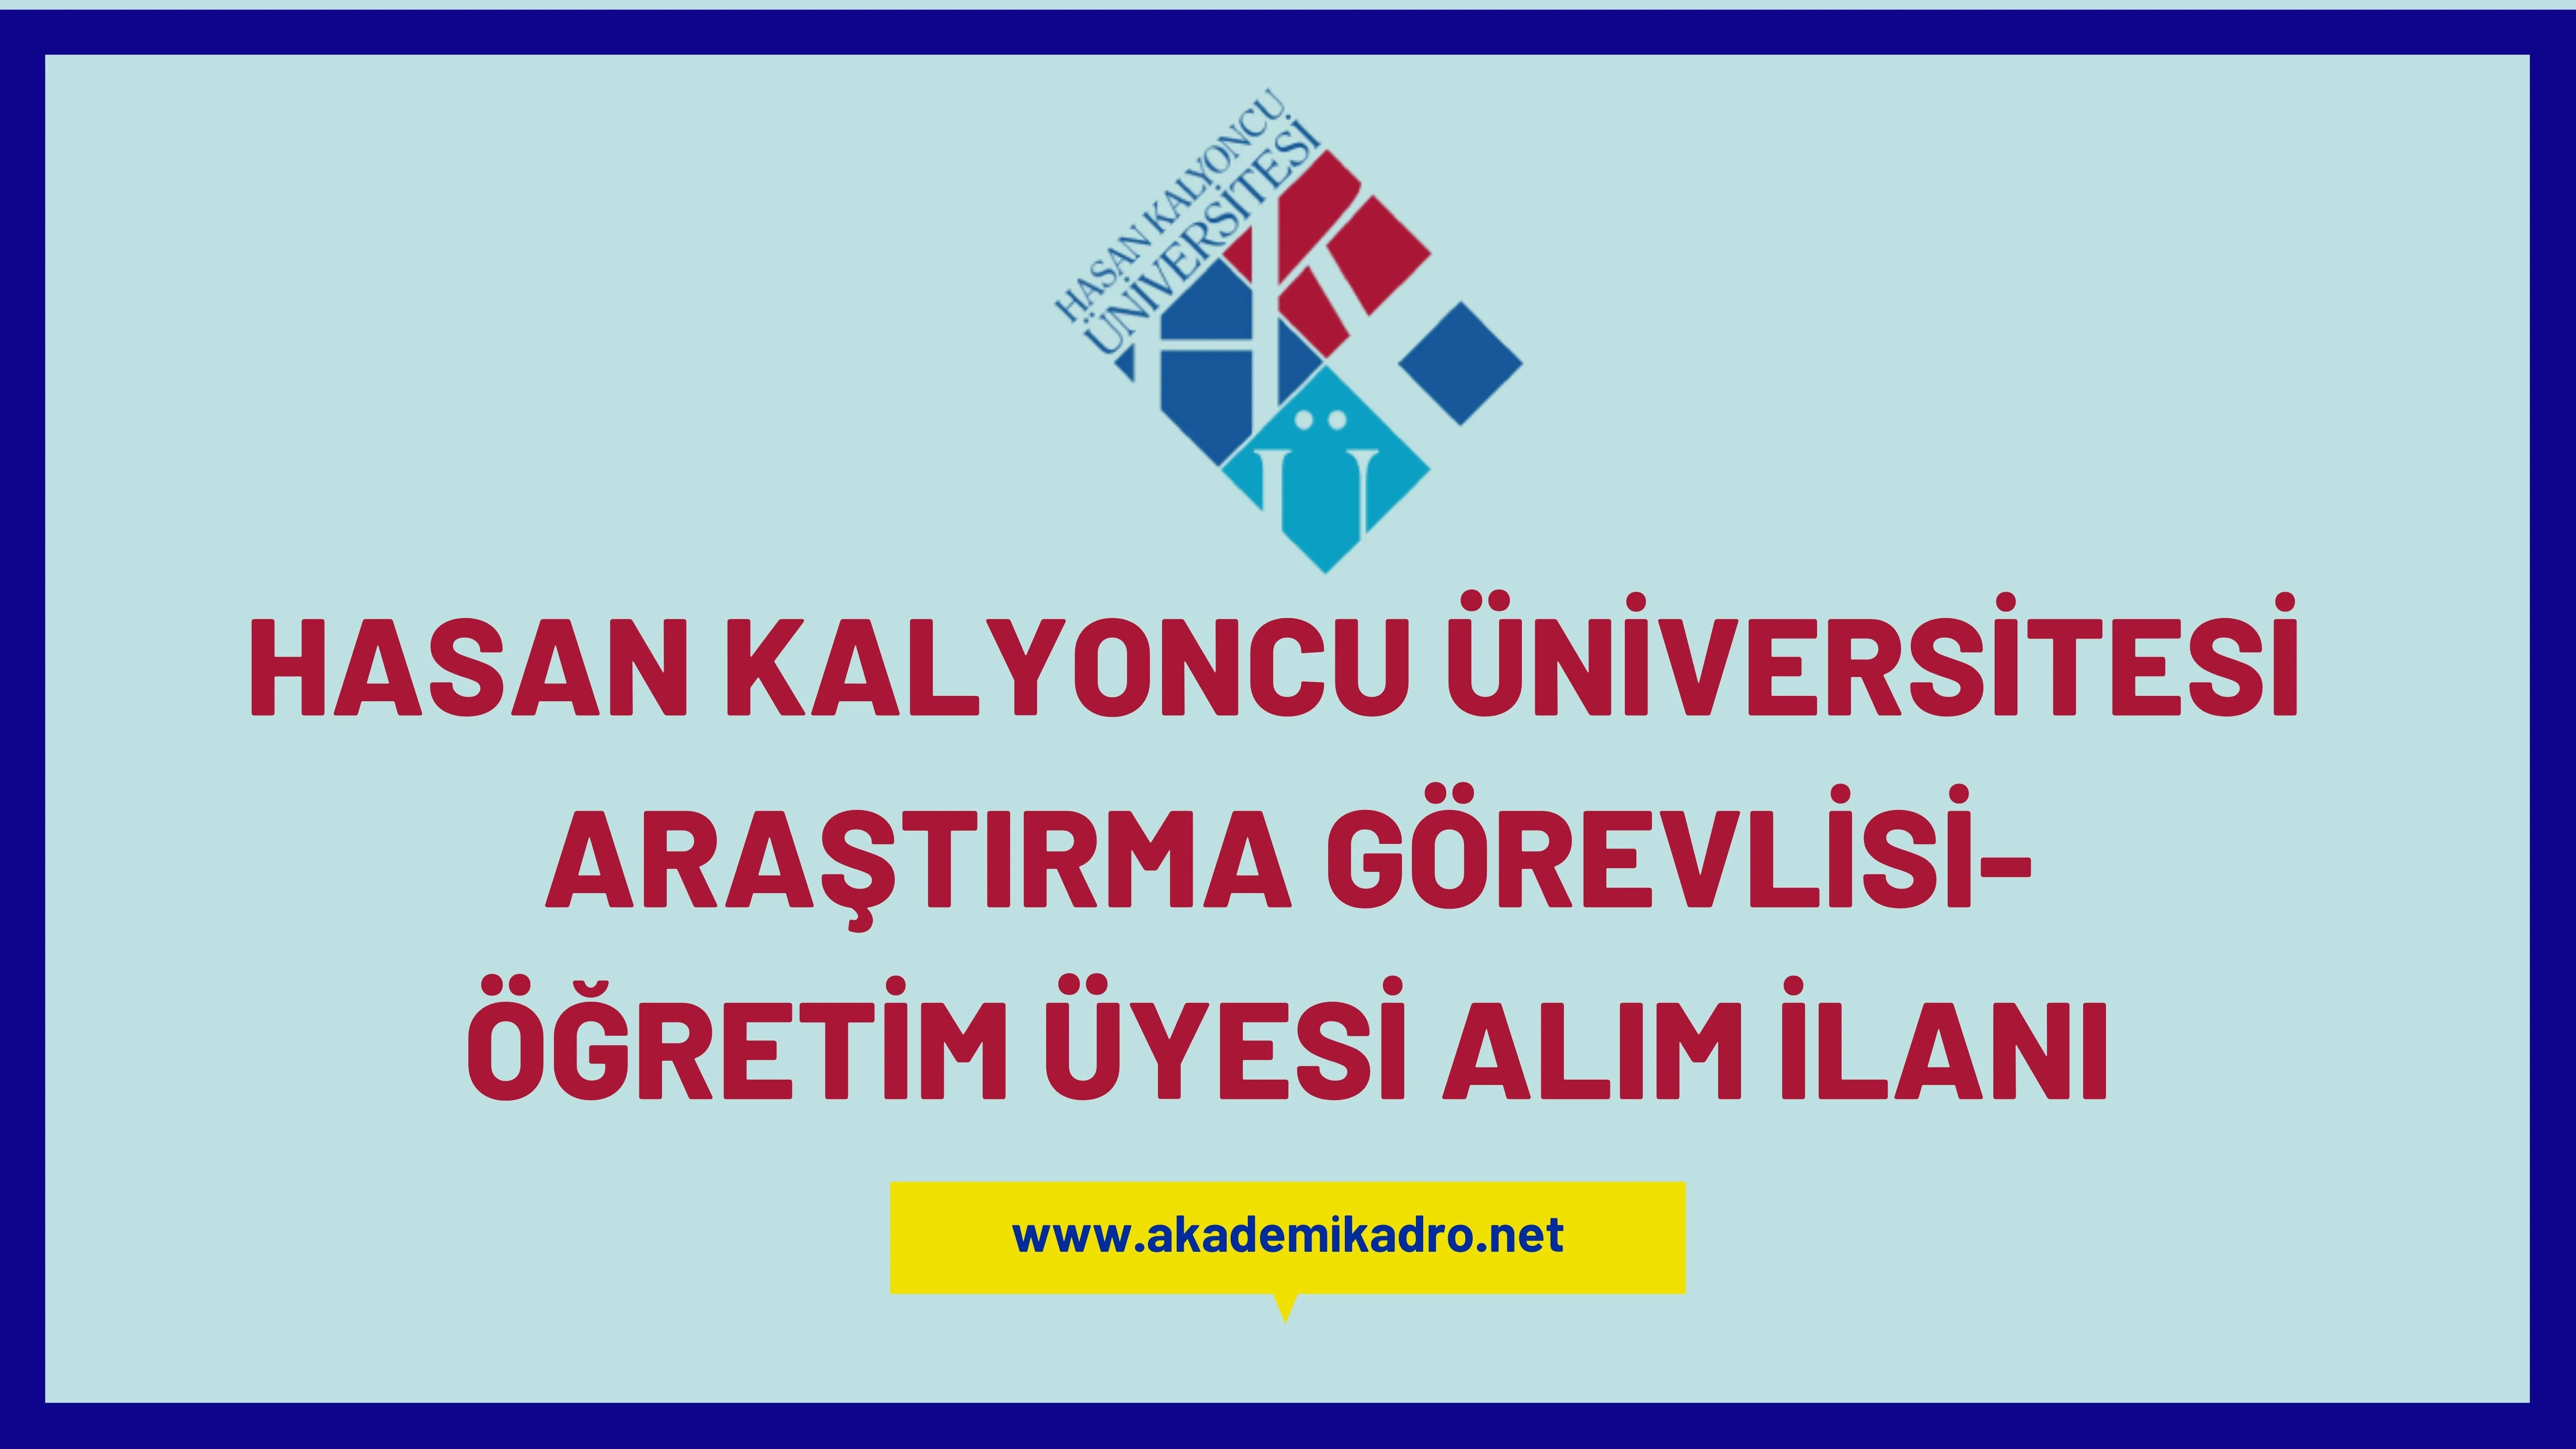 Hasan Kalyoncu Üniversitesi 2 Araştırma görevlisi, 3 Öğretim görevlisi ve  27 Öğretim Üyesi alacak.